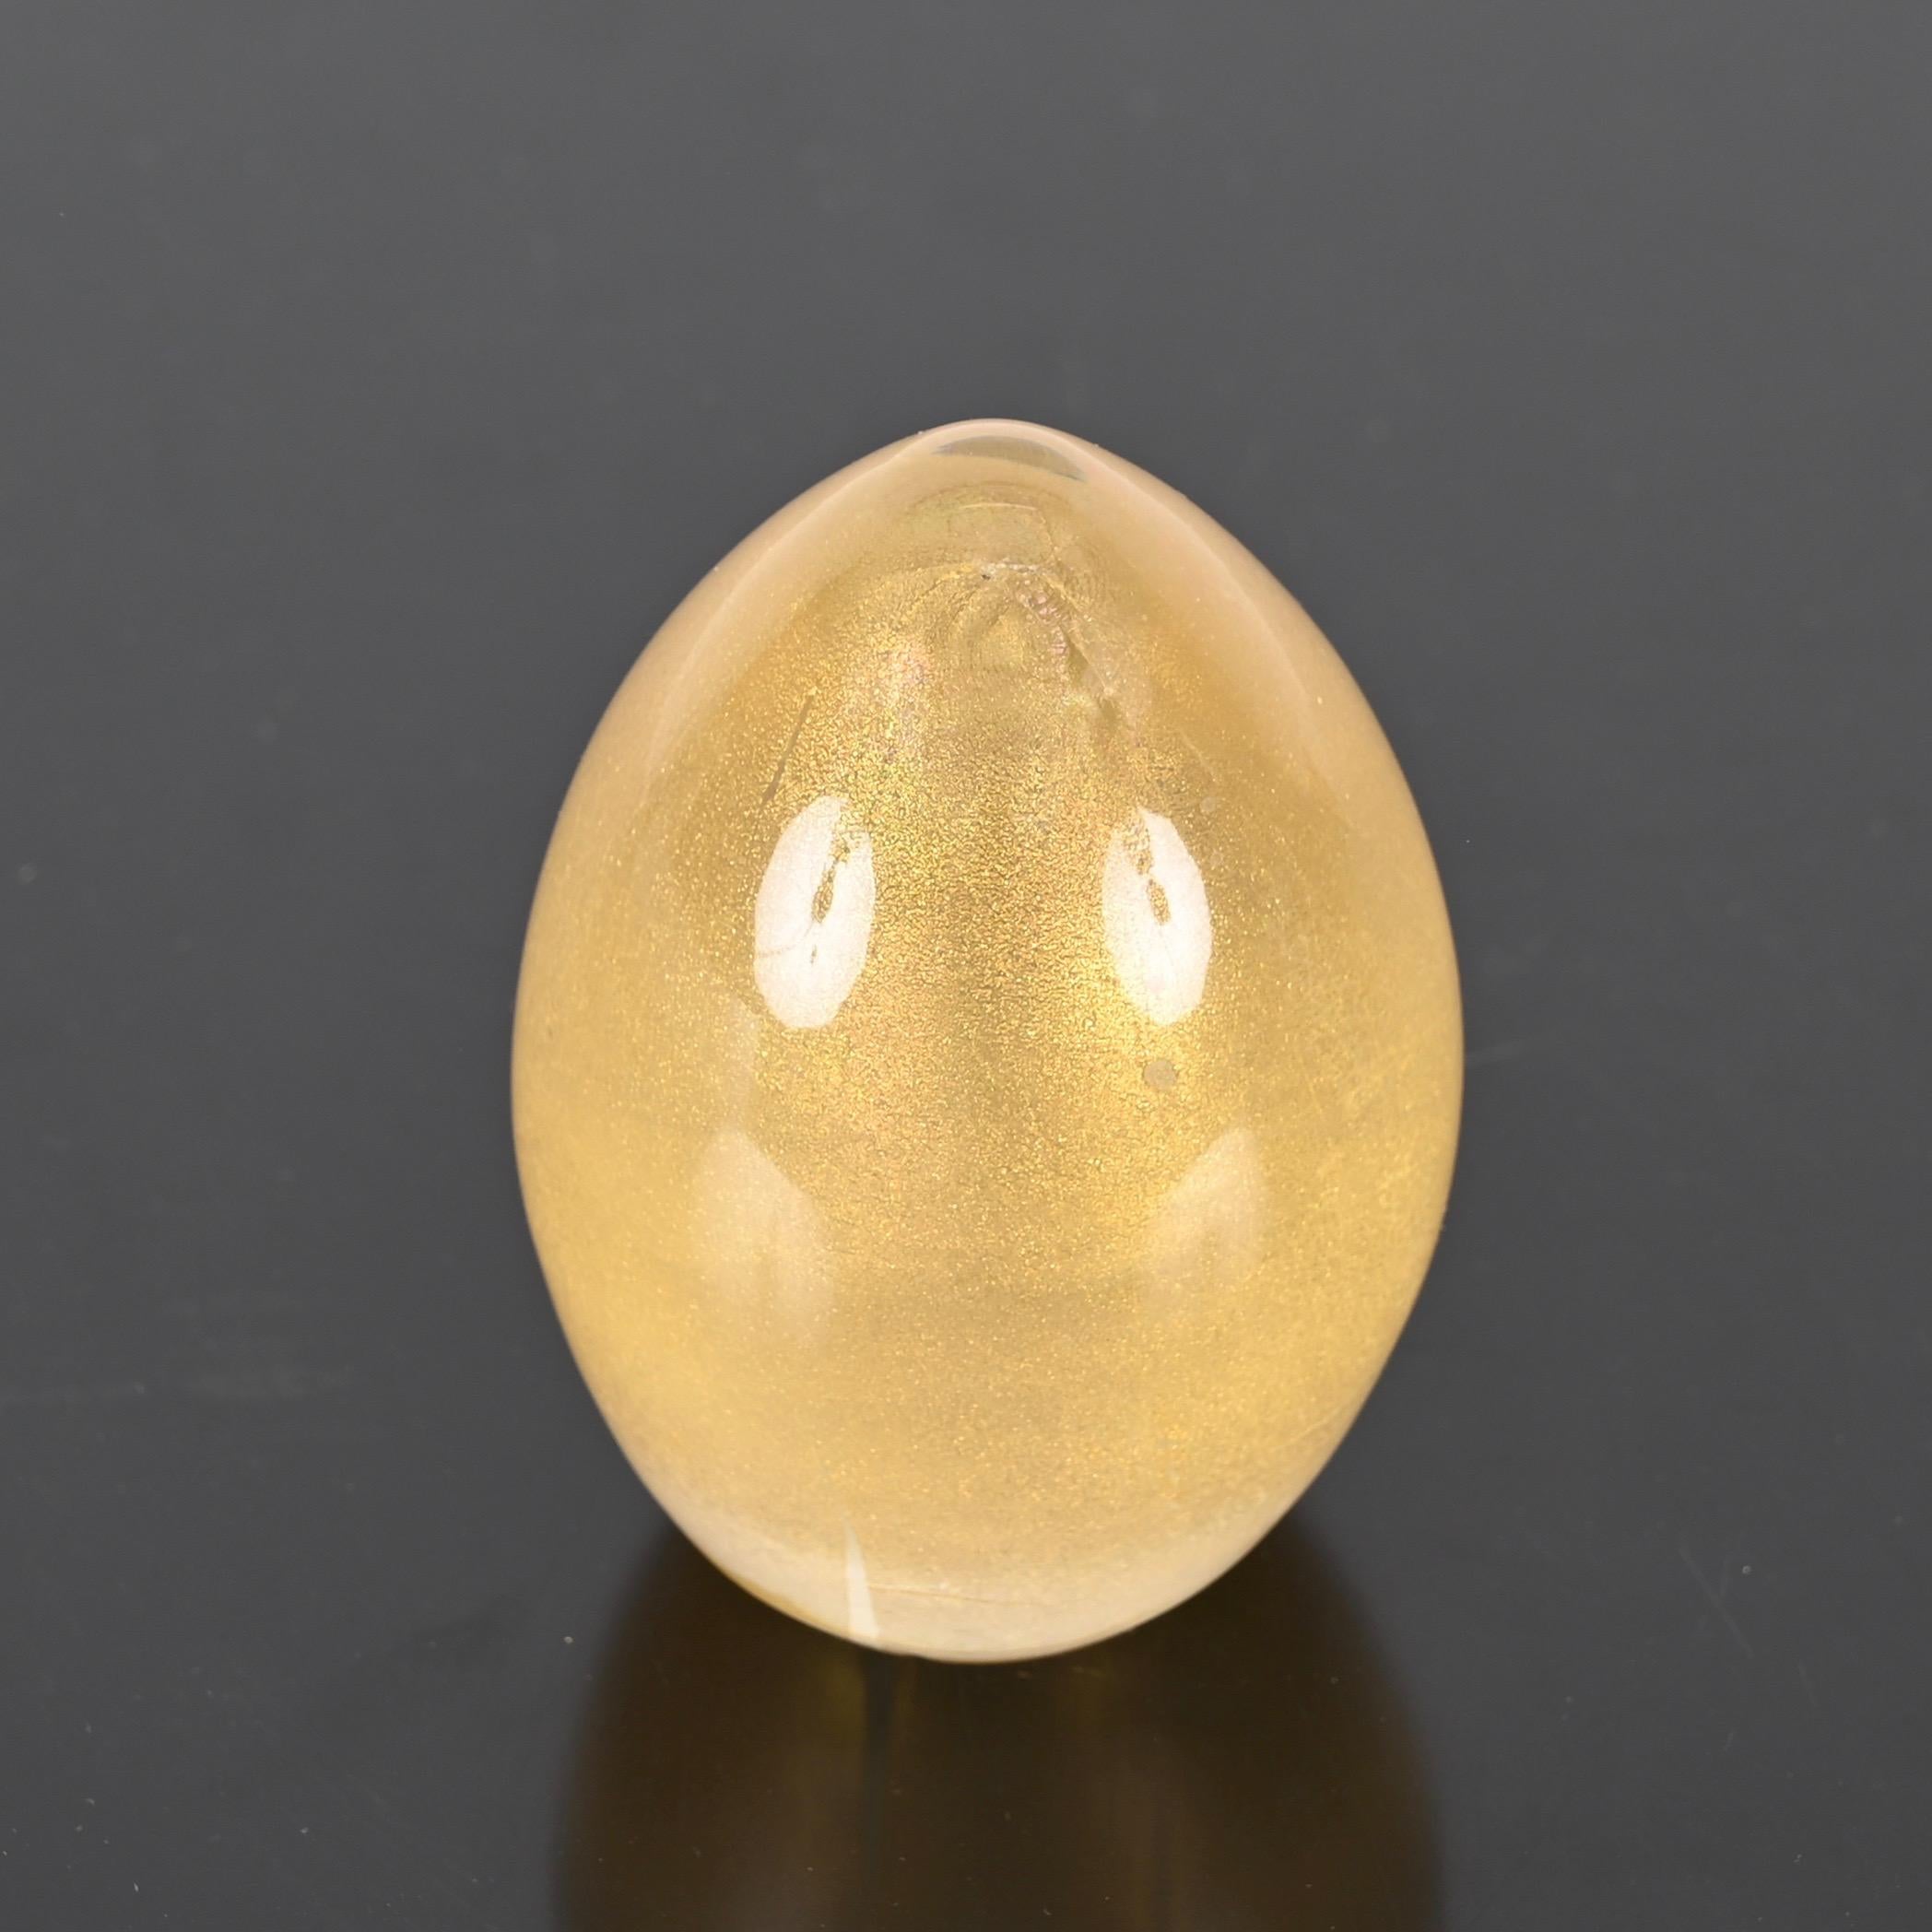 Fantastischer eiförmiger Briefbeschwerer aus mundgeblasenem Murano-Glas mit Blattgold im Inneren. Dieser unglaublich charmante Briefbeschwerer wurde in den 1950er Jahren von Archimede Seguso in Italien entworfen.

Dieser stilvolle und einzigartige